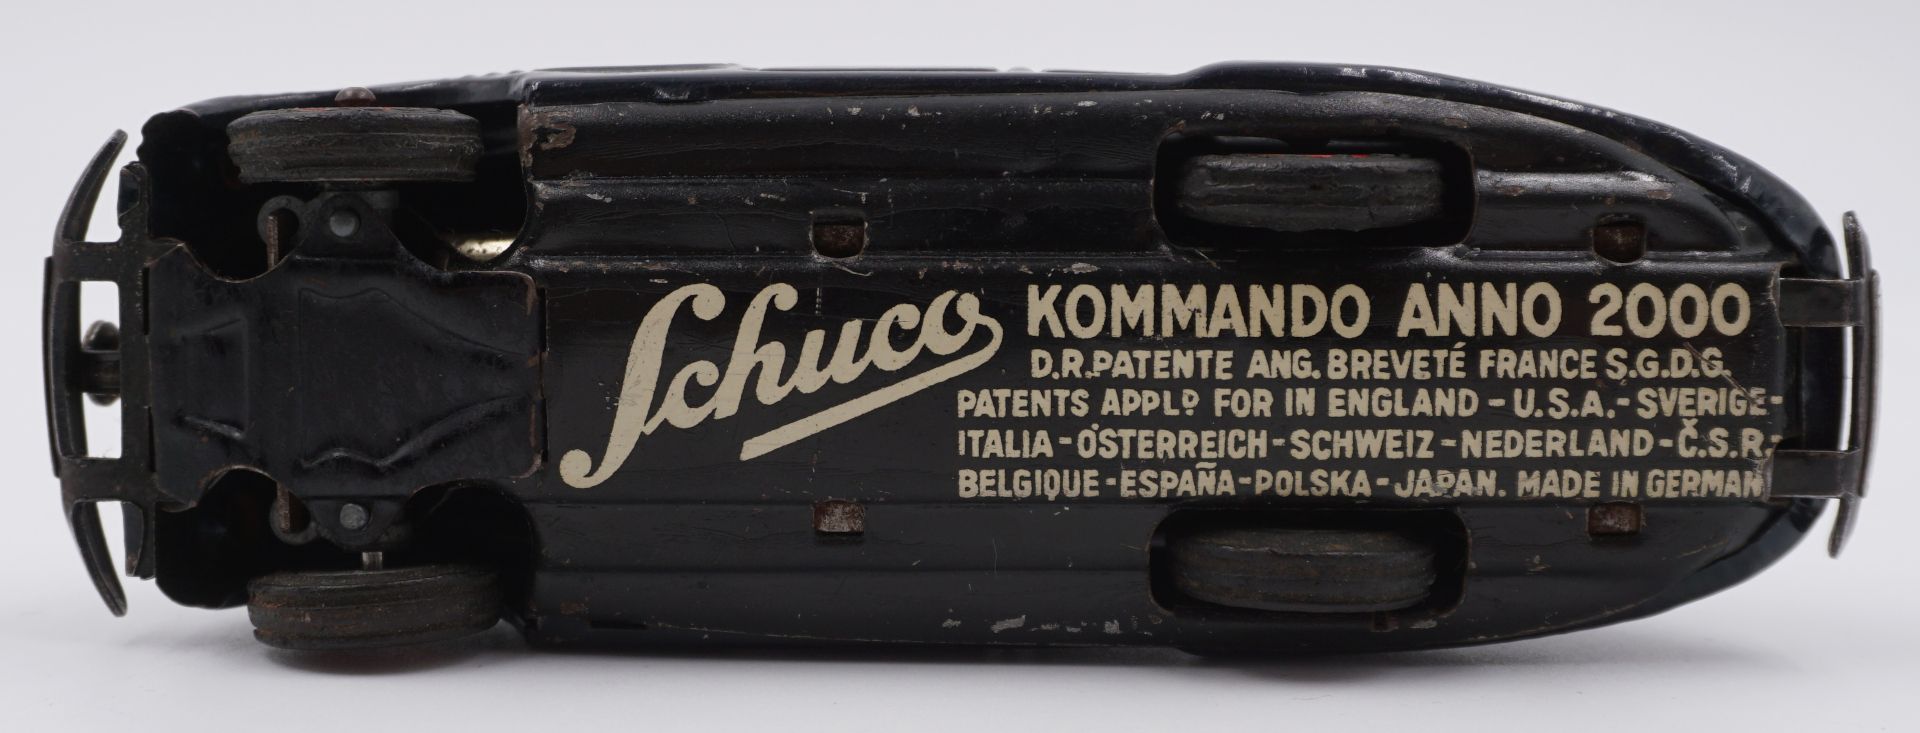 1 Spielzeugauto SCHUCO "Kommando Anno 2000" wohl 1930er Jahre - Image 5 of 5